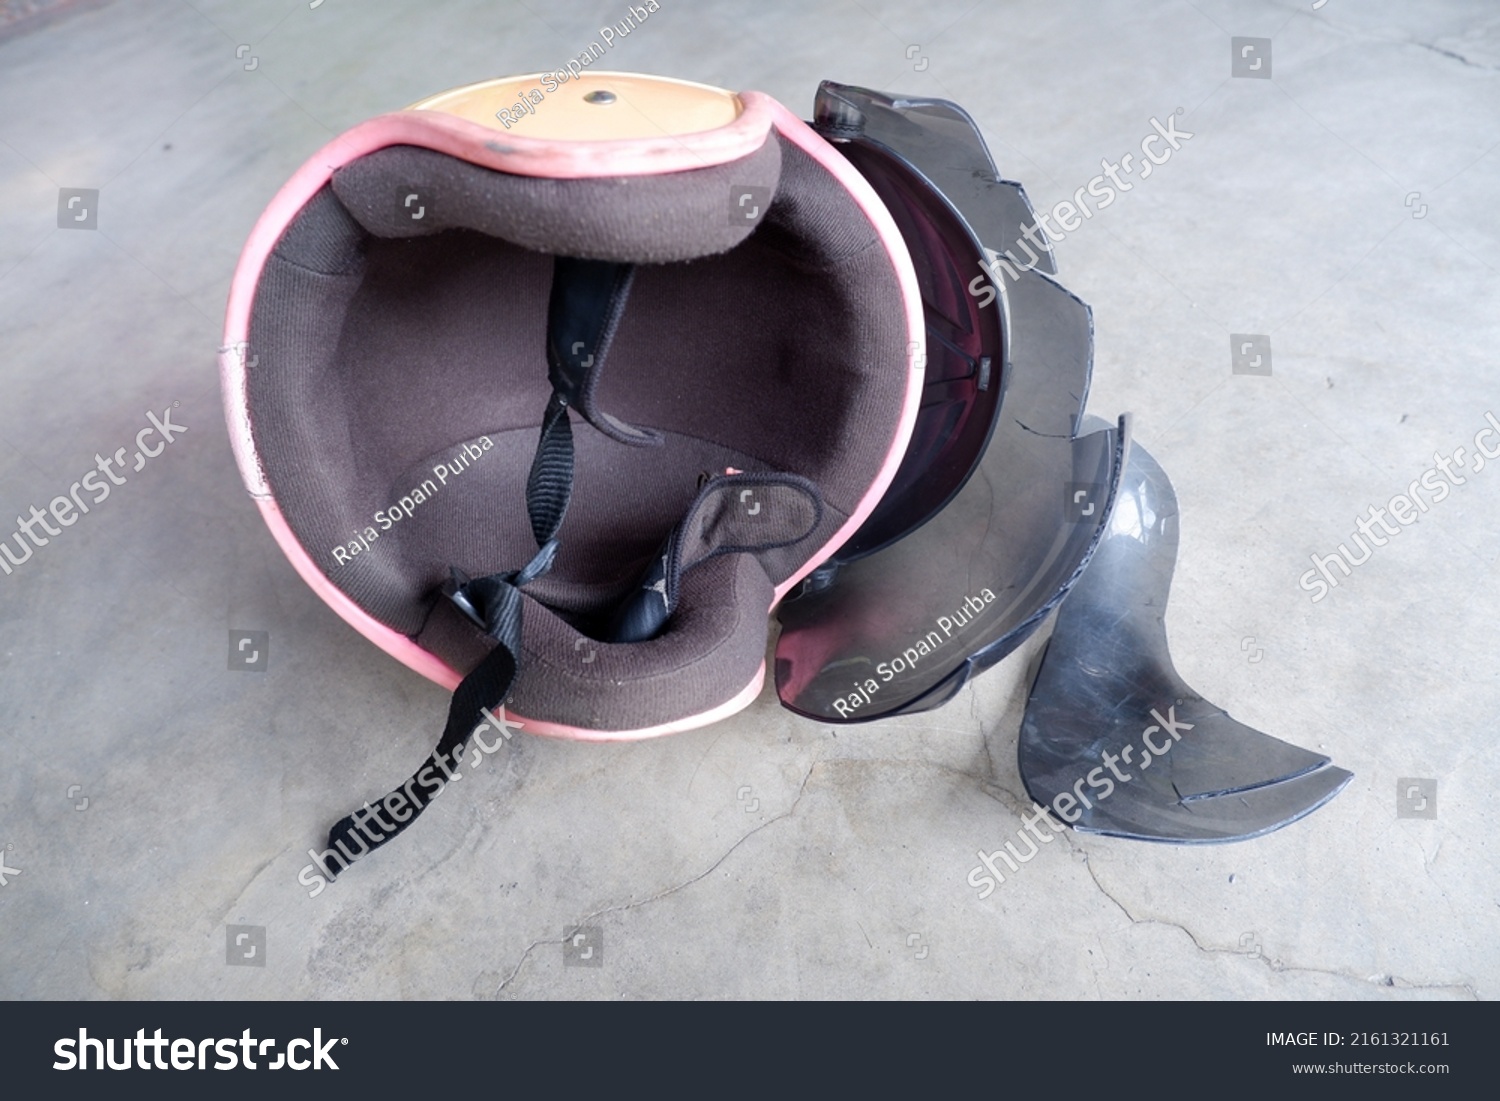 Broken helmet lying on the floor #2161321161